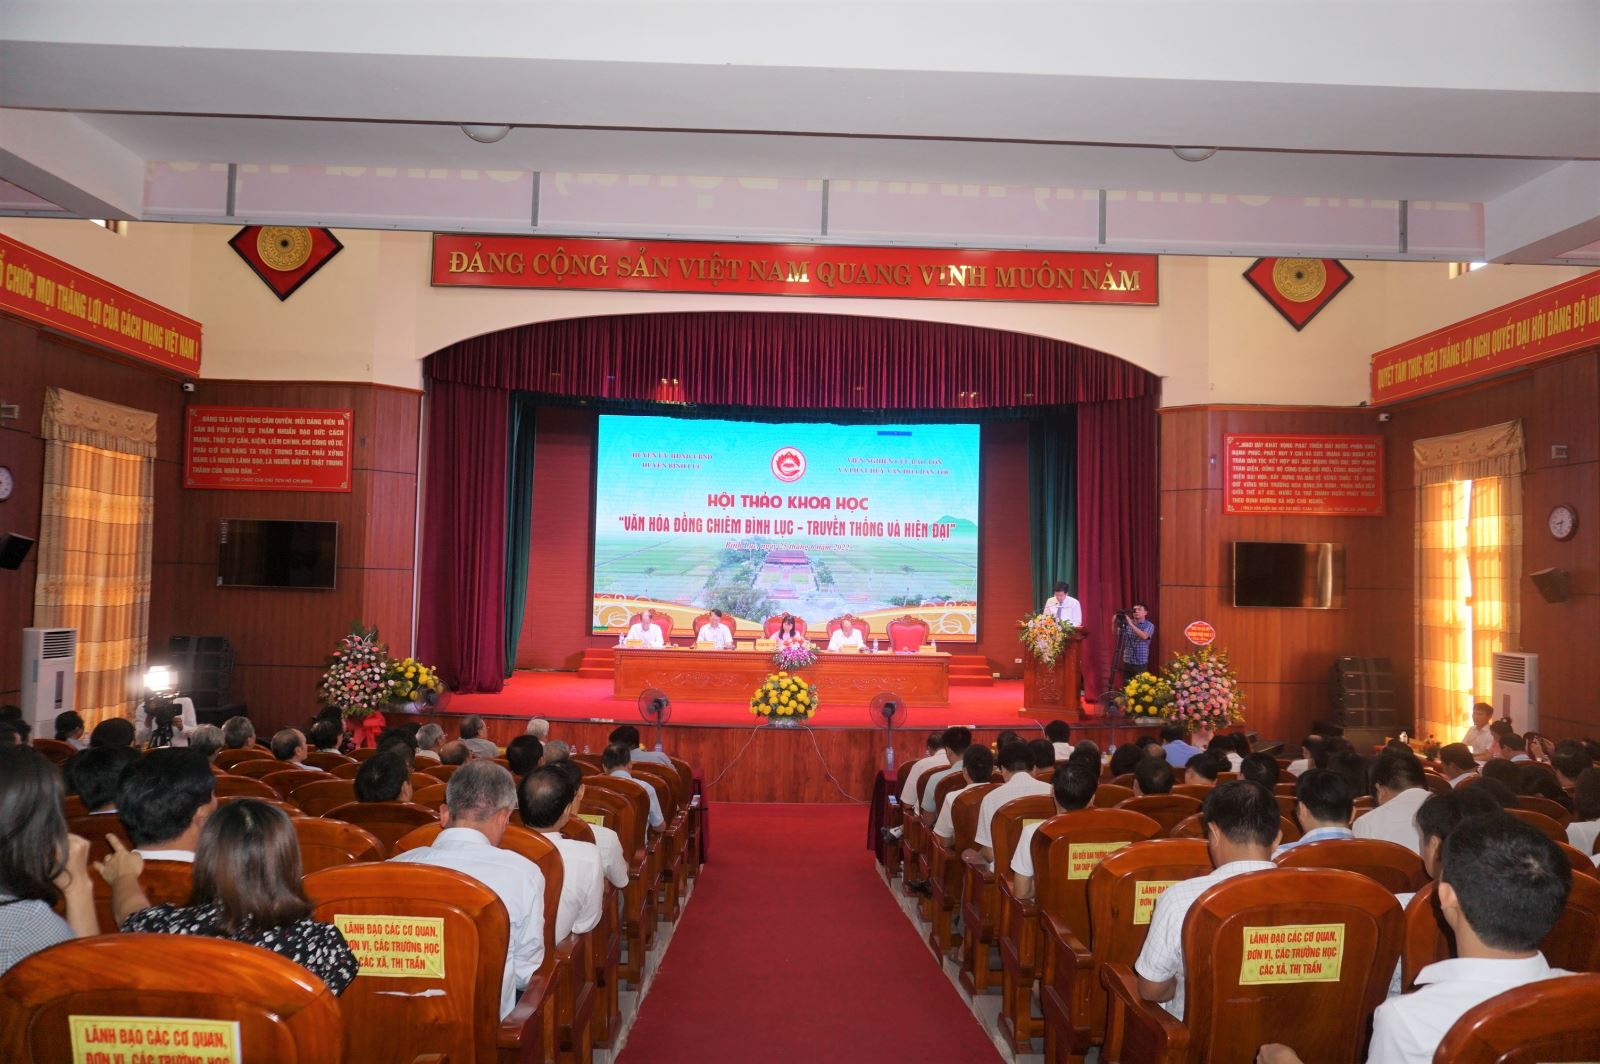 Hà Nam: Hội thảo khoa học “Văn hóa đồng chiêm Bình Lục - truyền thống và hiện đại”